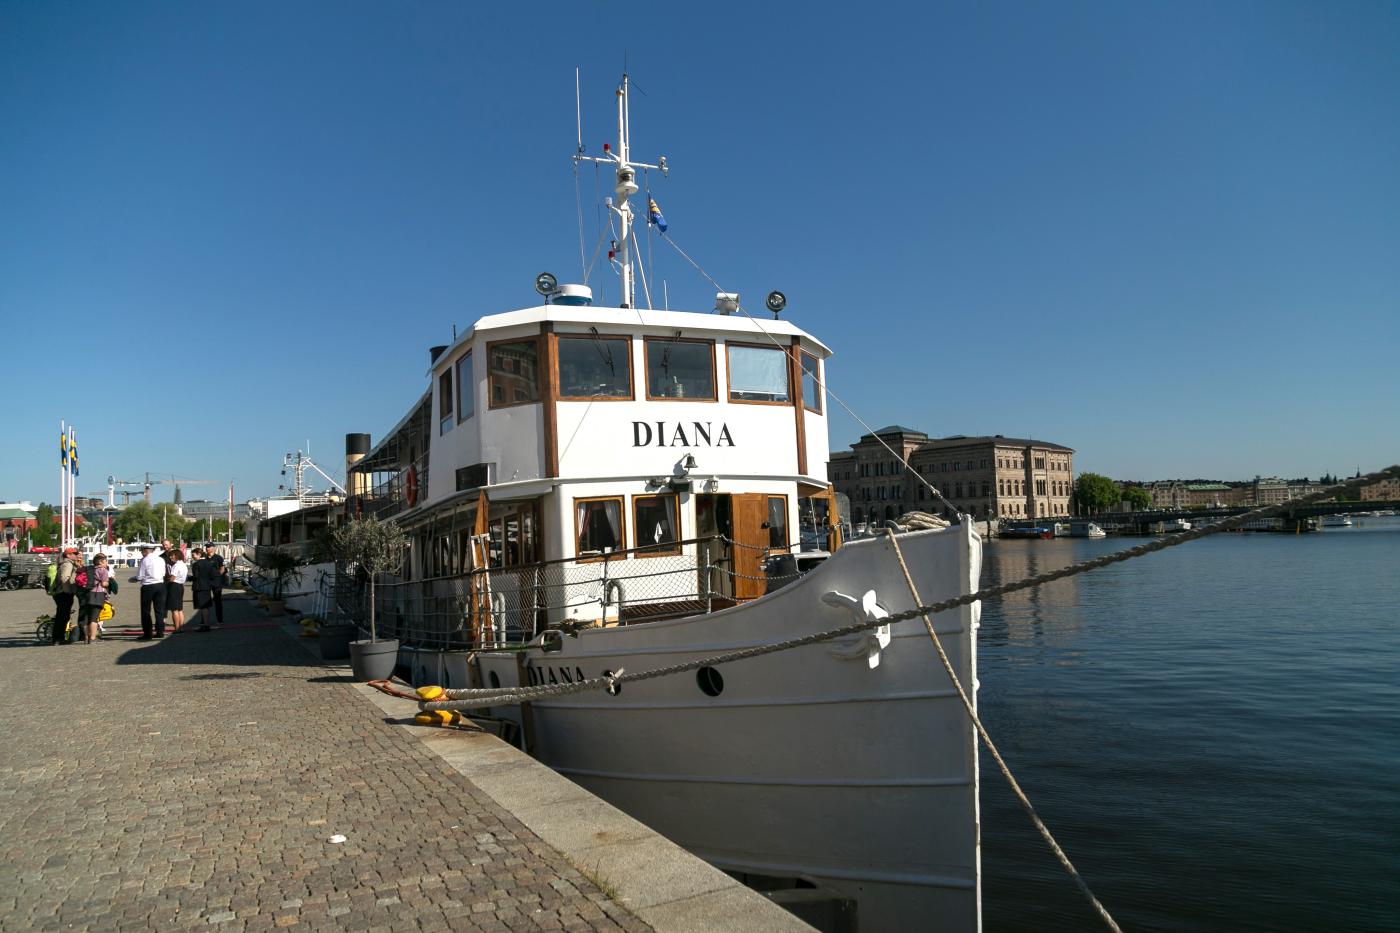 Strömmas fartyg Diana